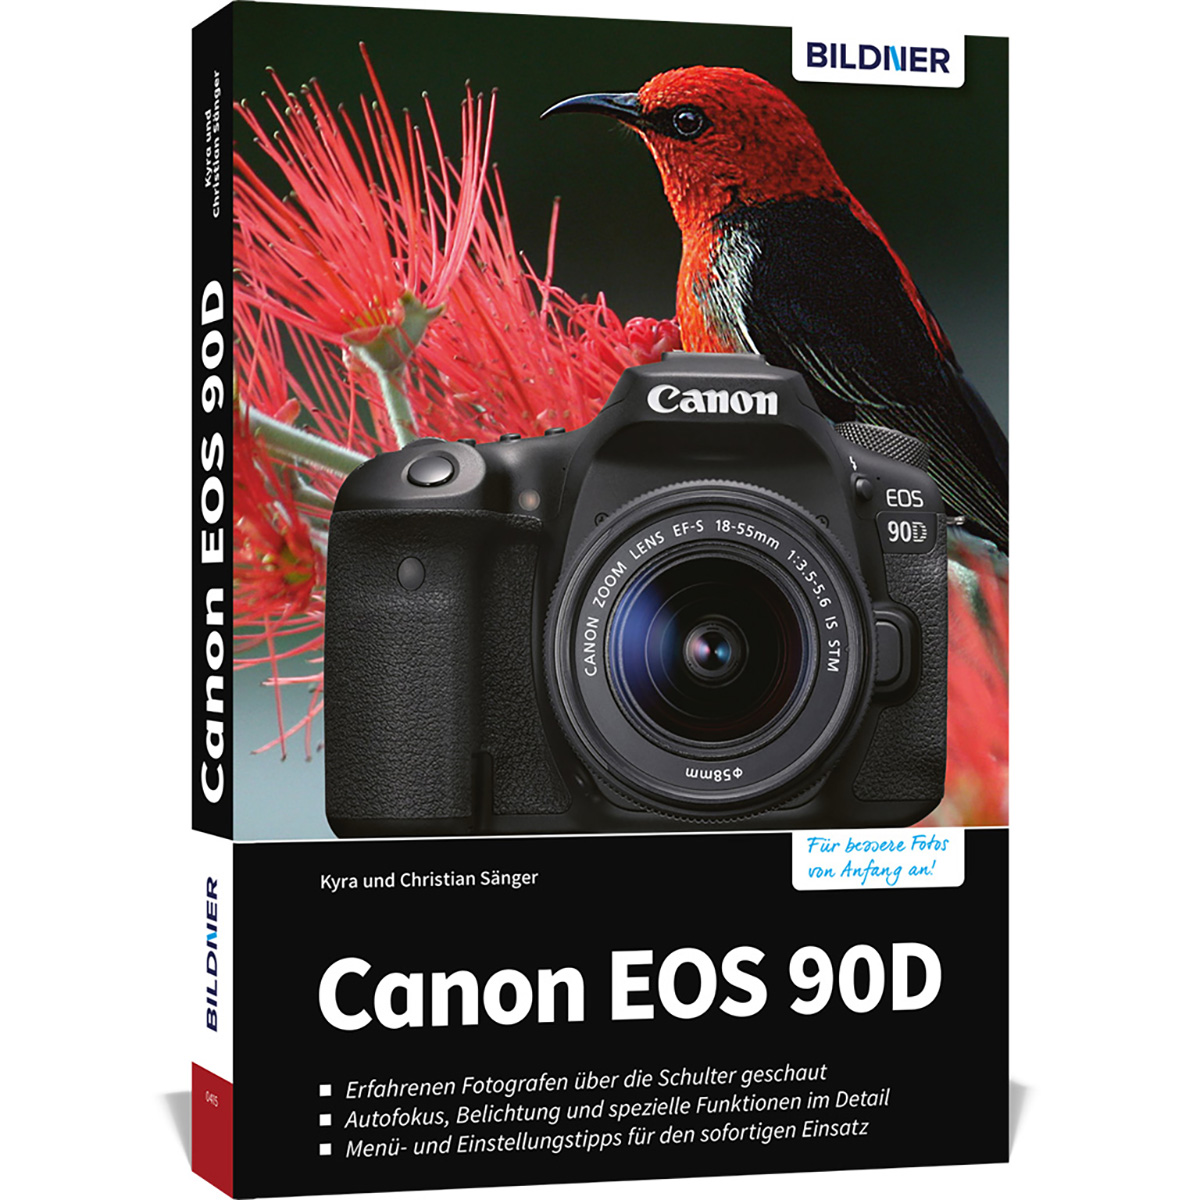 Canon EOS 90D - Ihrer Das Kamera! zu umfangreiche Praxisbuch